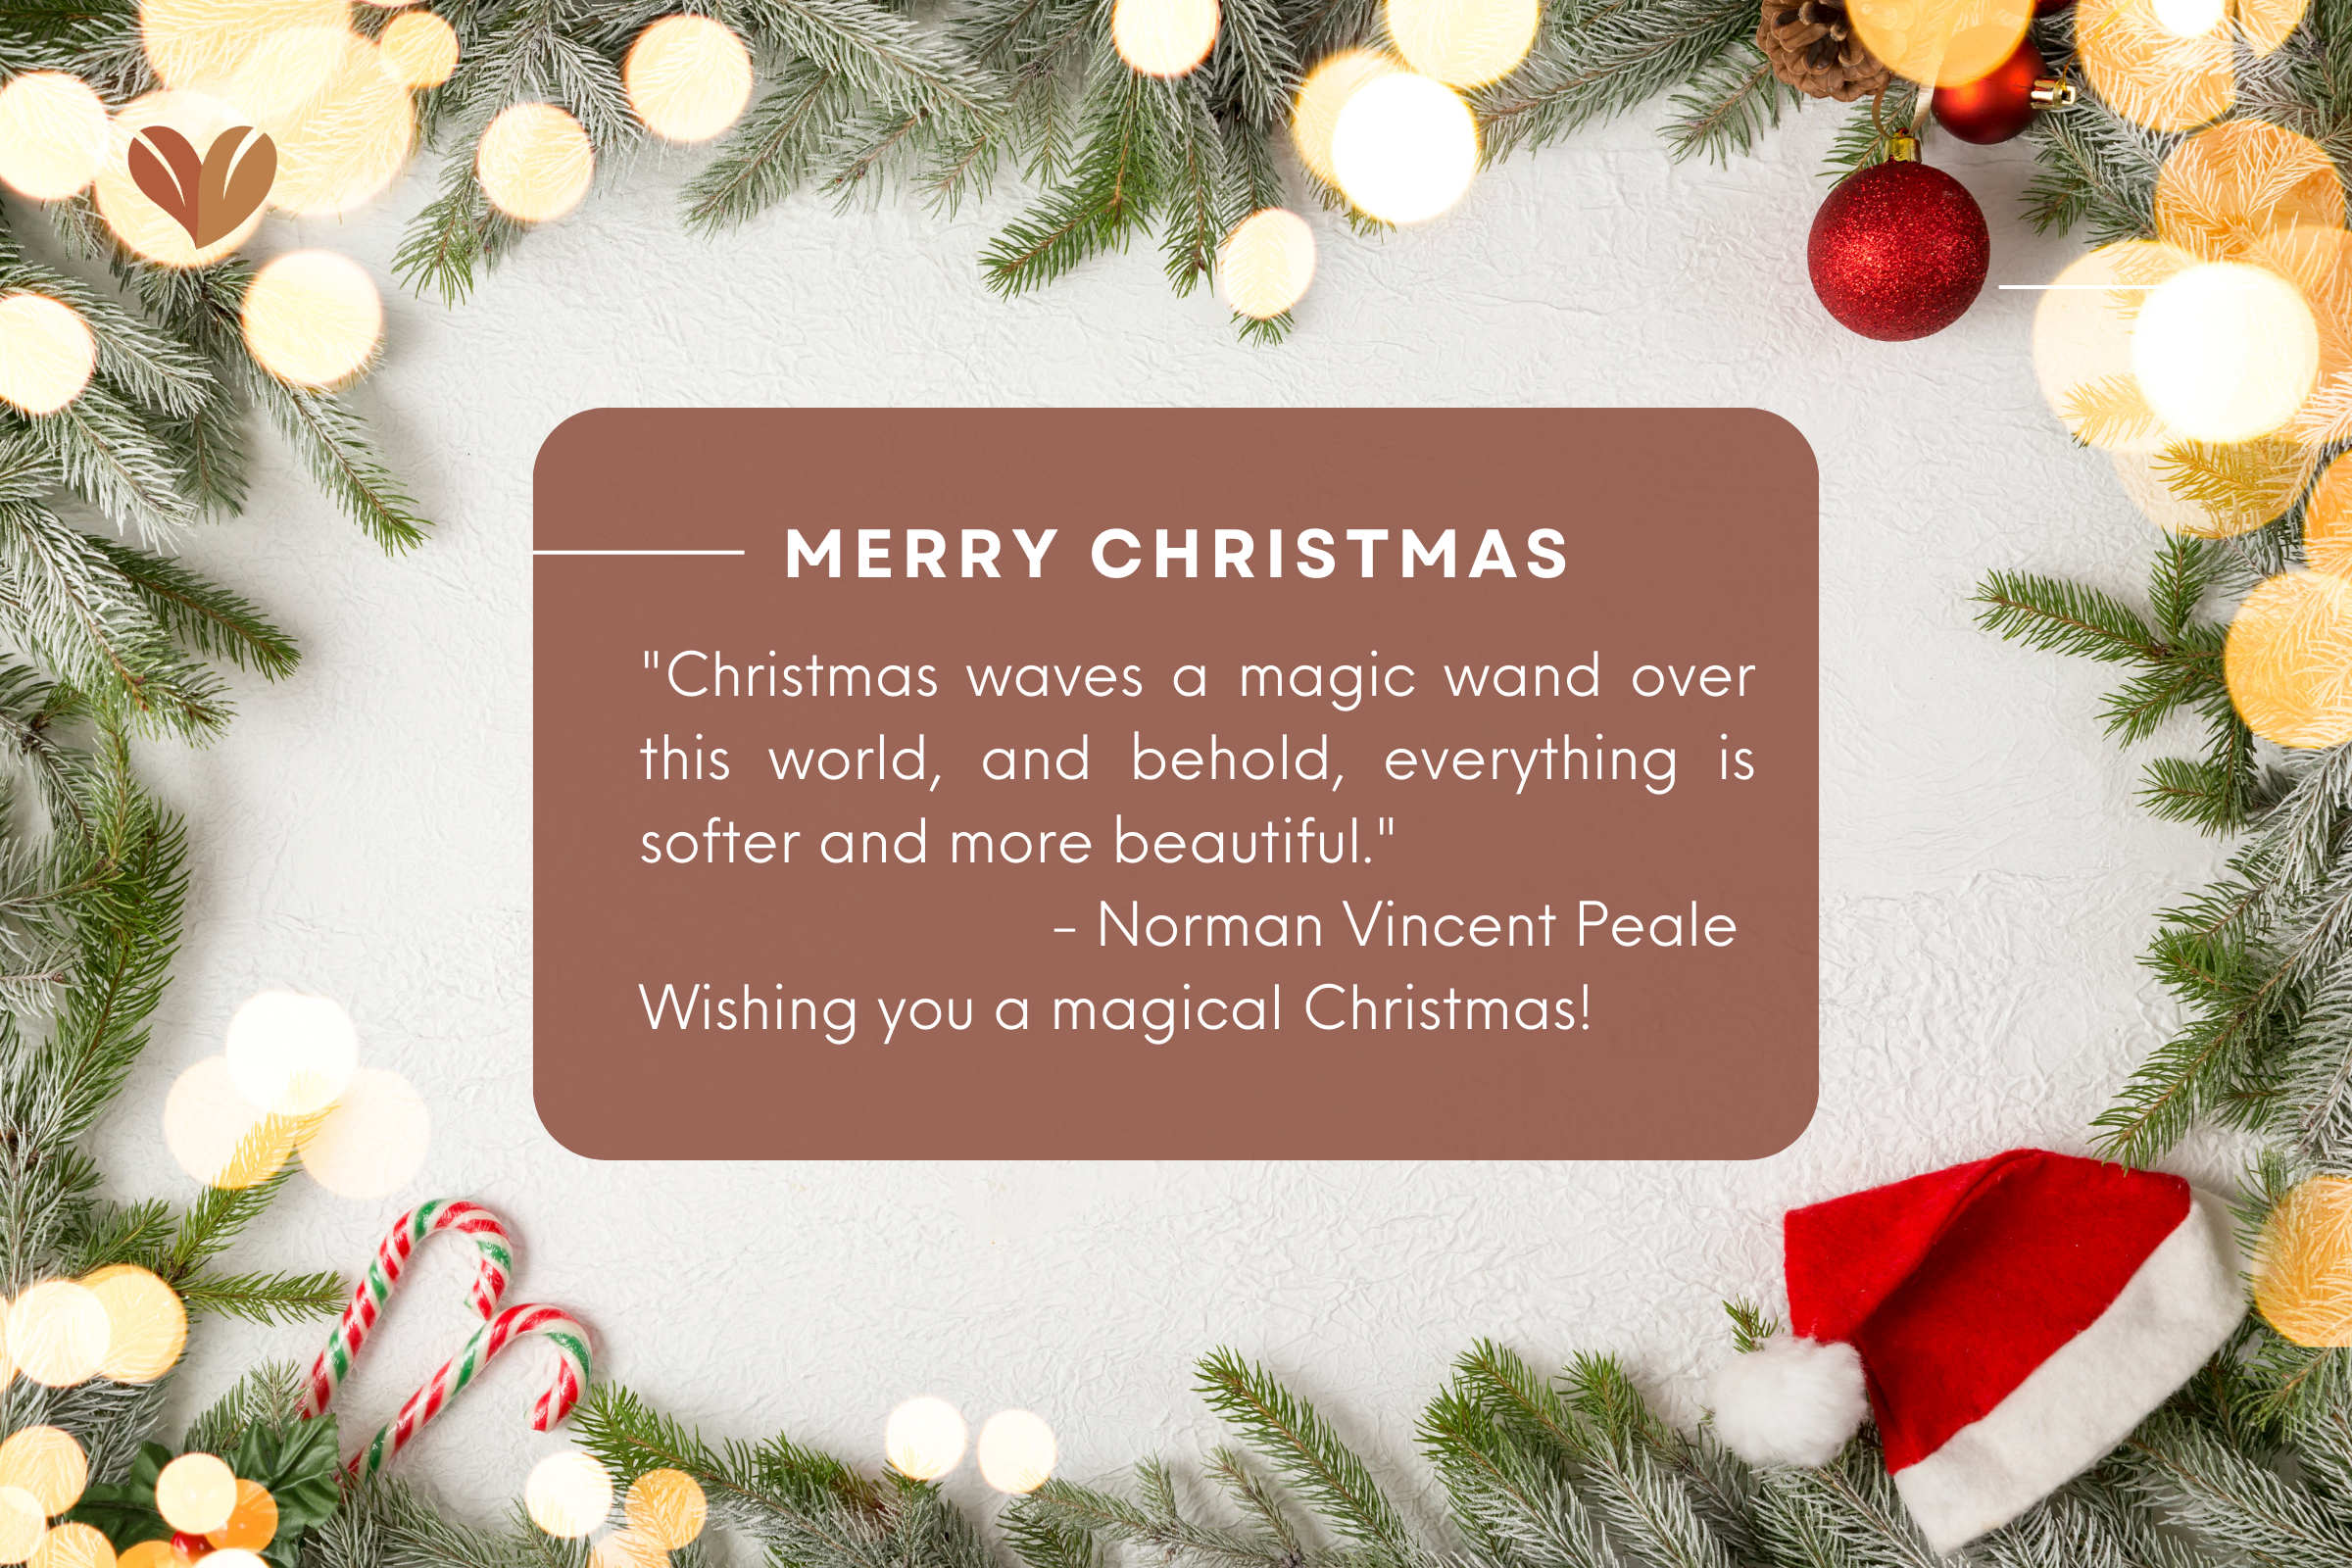 Christmas greetings message